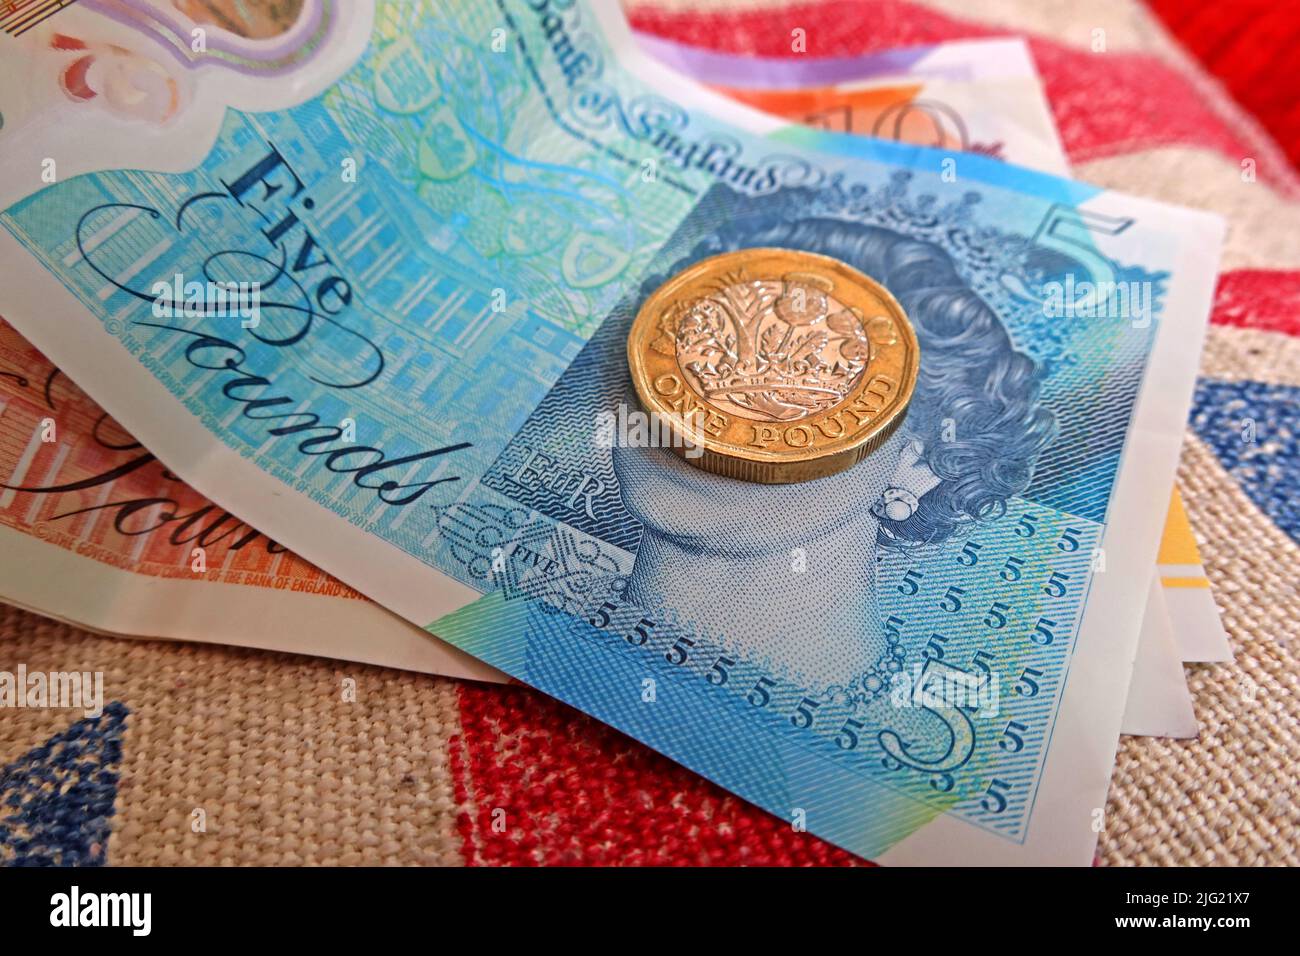 Sterling-Pfund-Scheine, Bank von England und Pfund-Münzen auf einer Gewerkschaft Jack Flagge - Lebenshaltungskosten Krise, in Großbritannien / GB Stockfoto